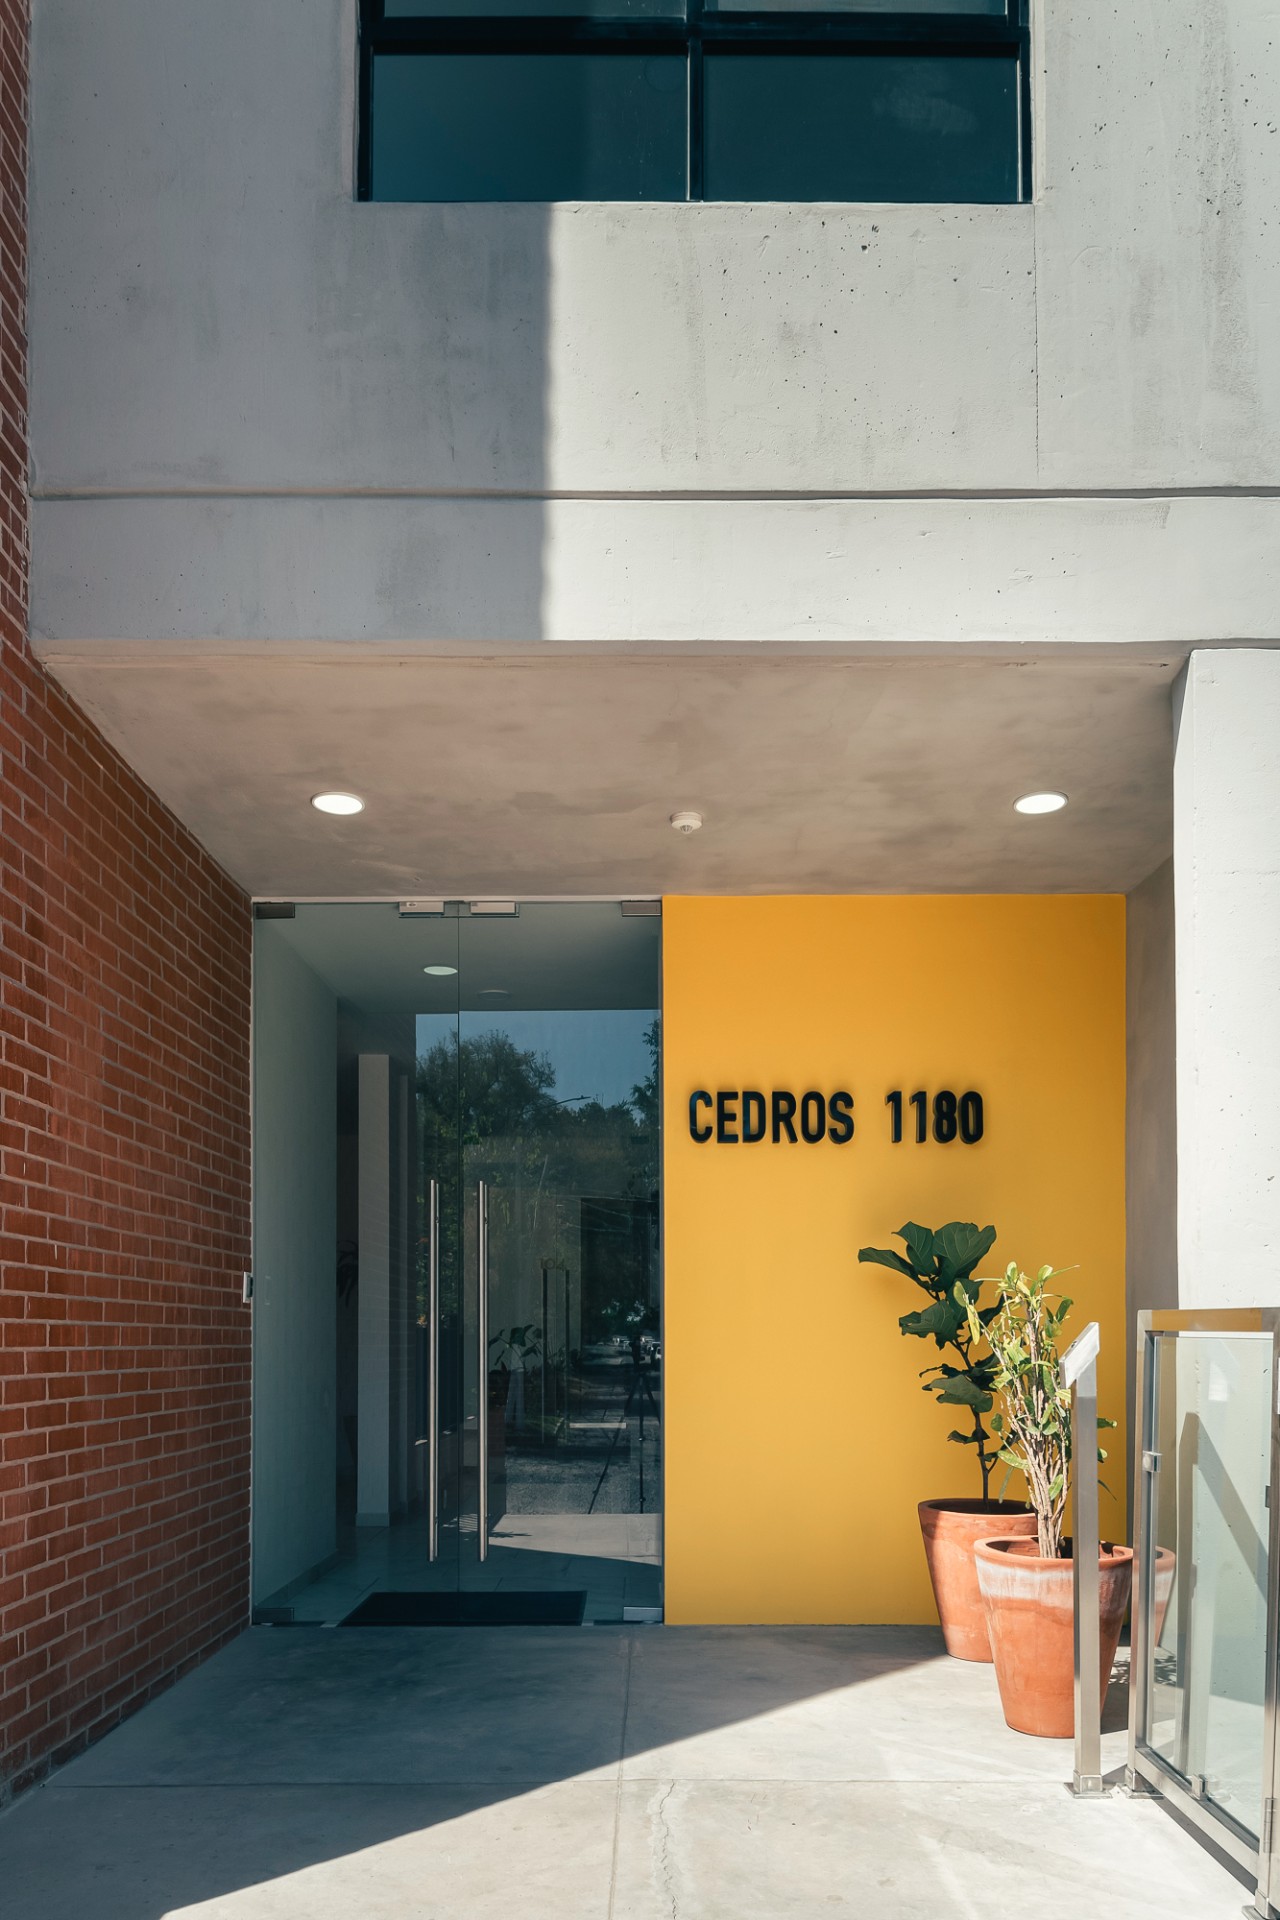 Cedros 1180, complejo de departamentos desarrollado por Grupo Casillas y ubicado en Zapopan, Jalisco.